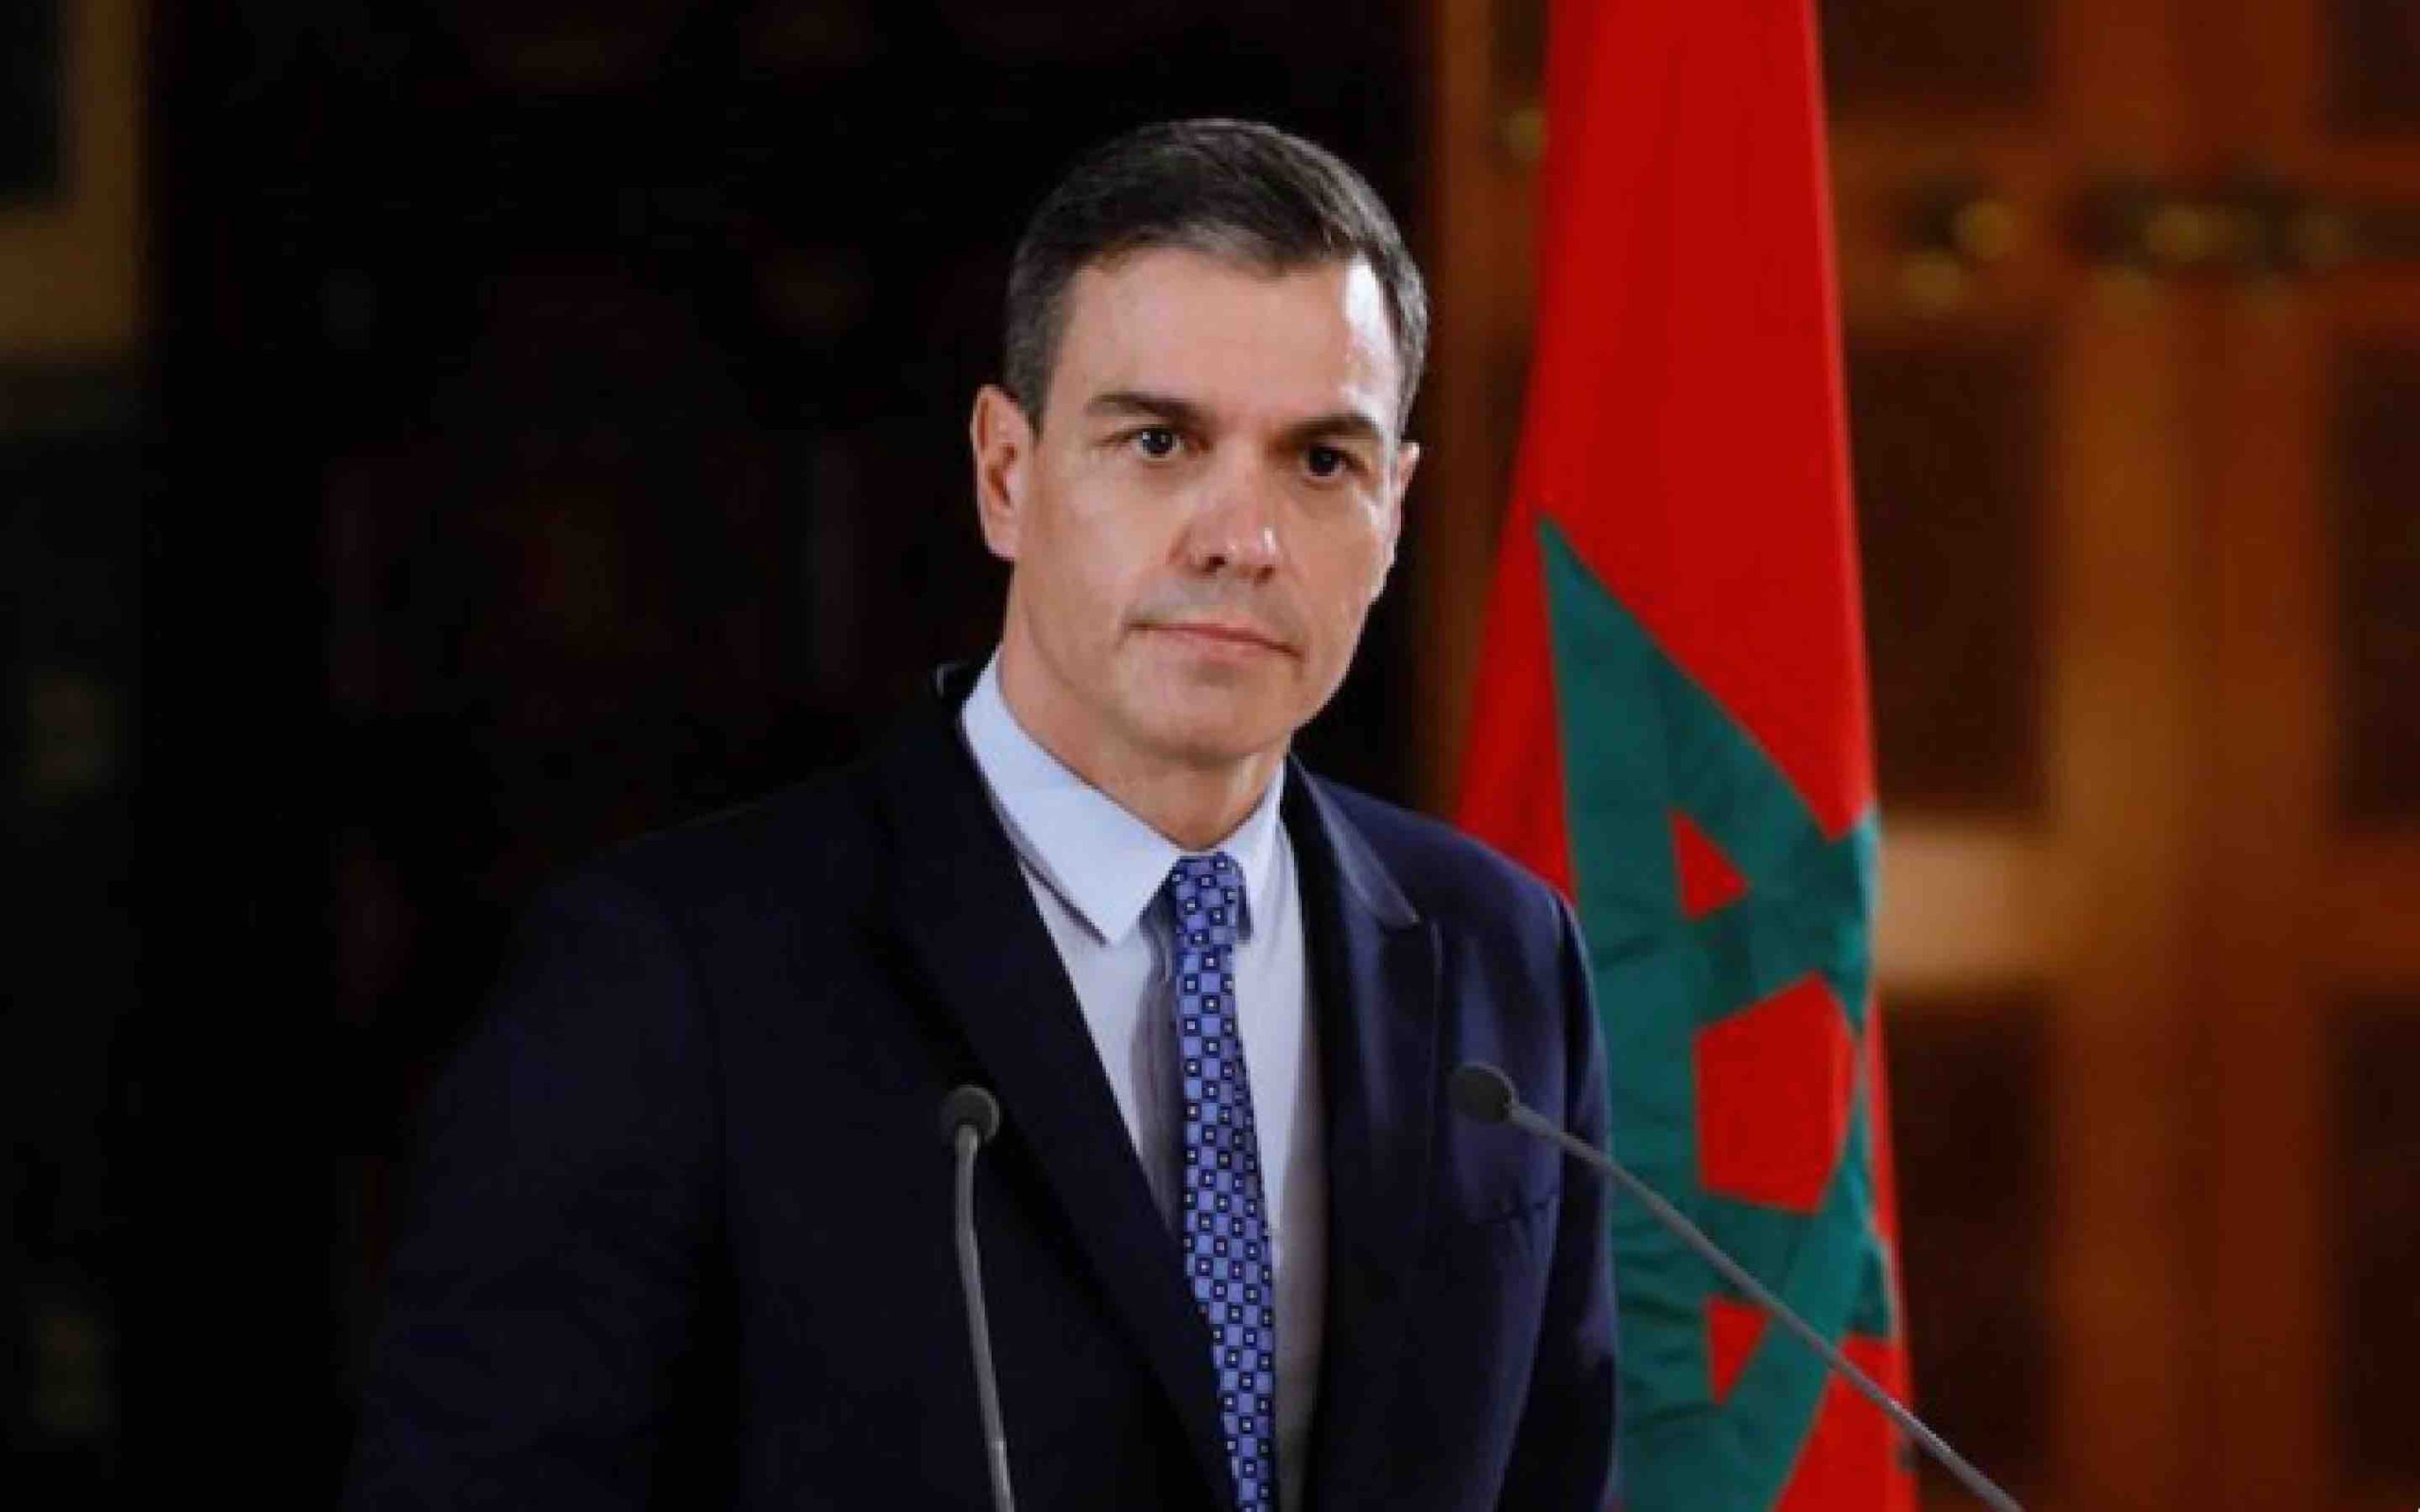 Pedro Sanchez : Le Maroc et l’Espagne consolident un modèle de voisinage constructif fondé sur la confiance et le respect mutuel